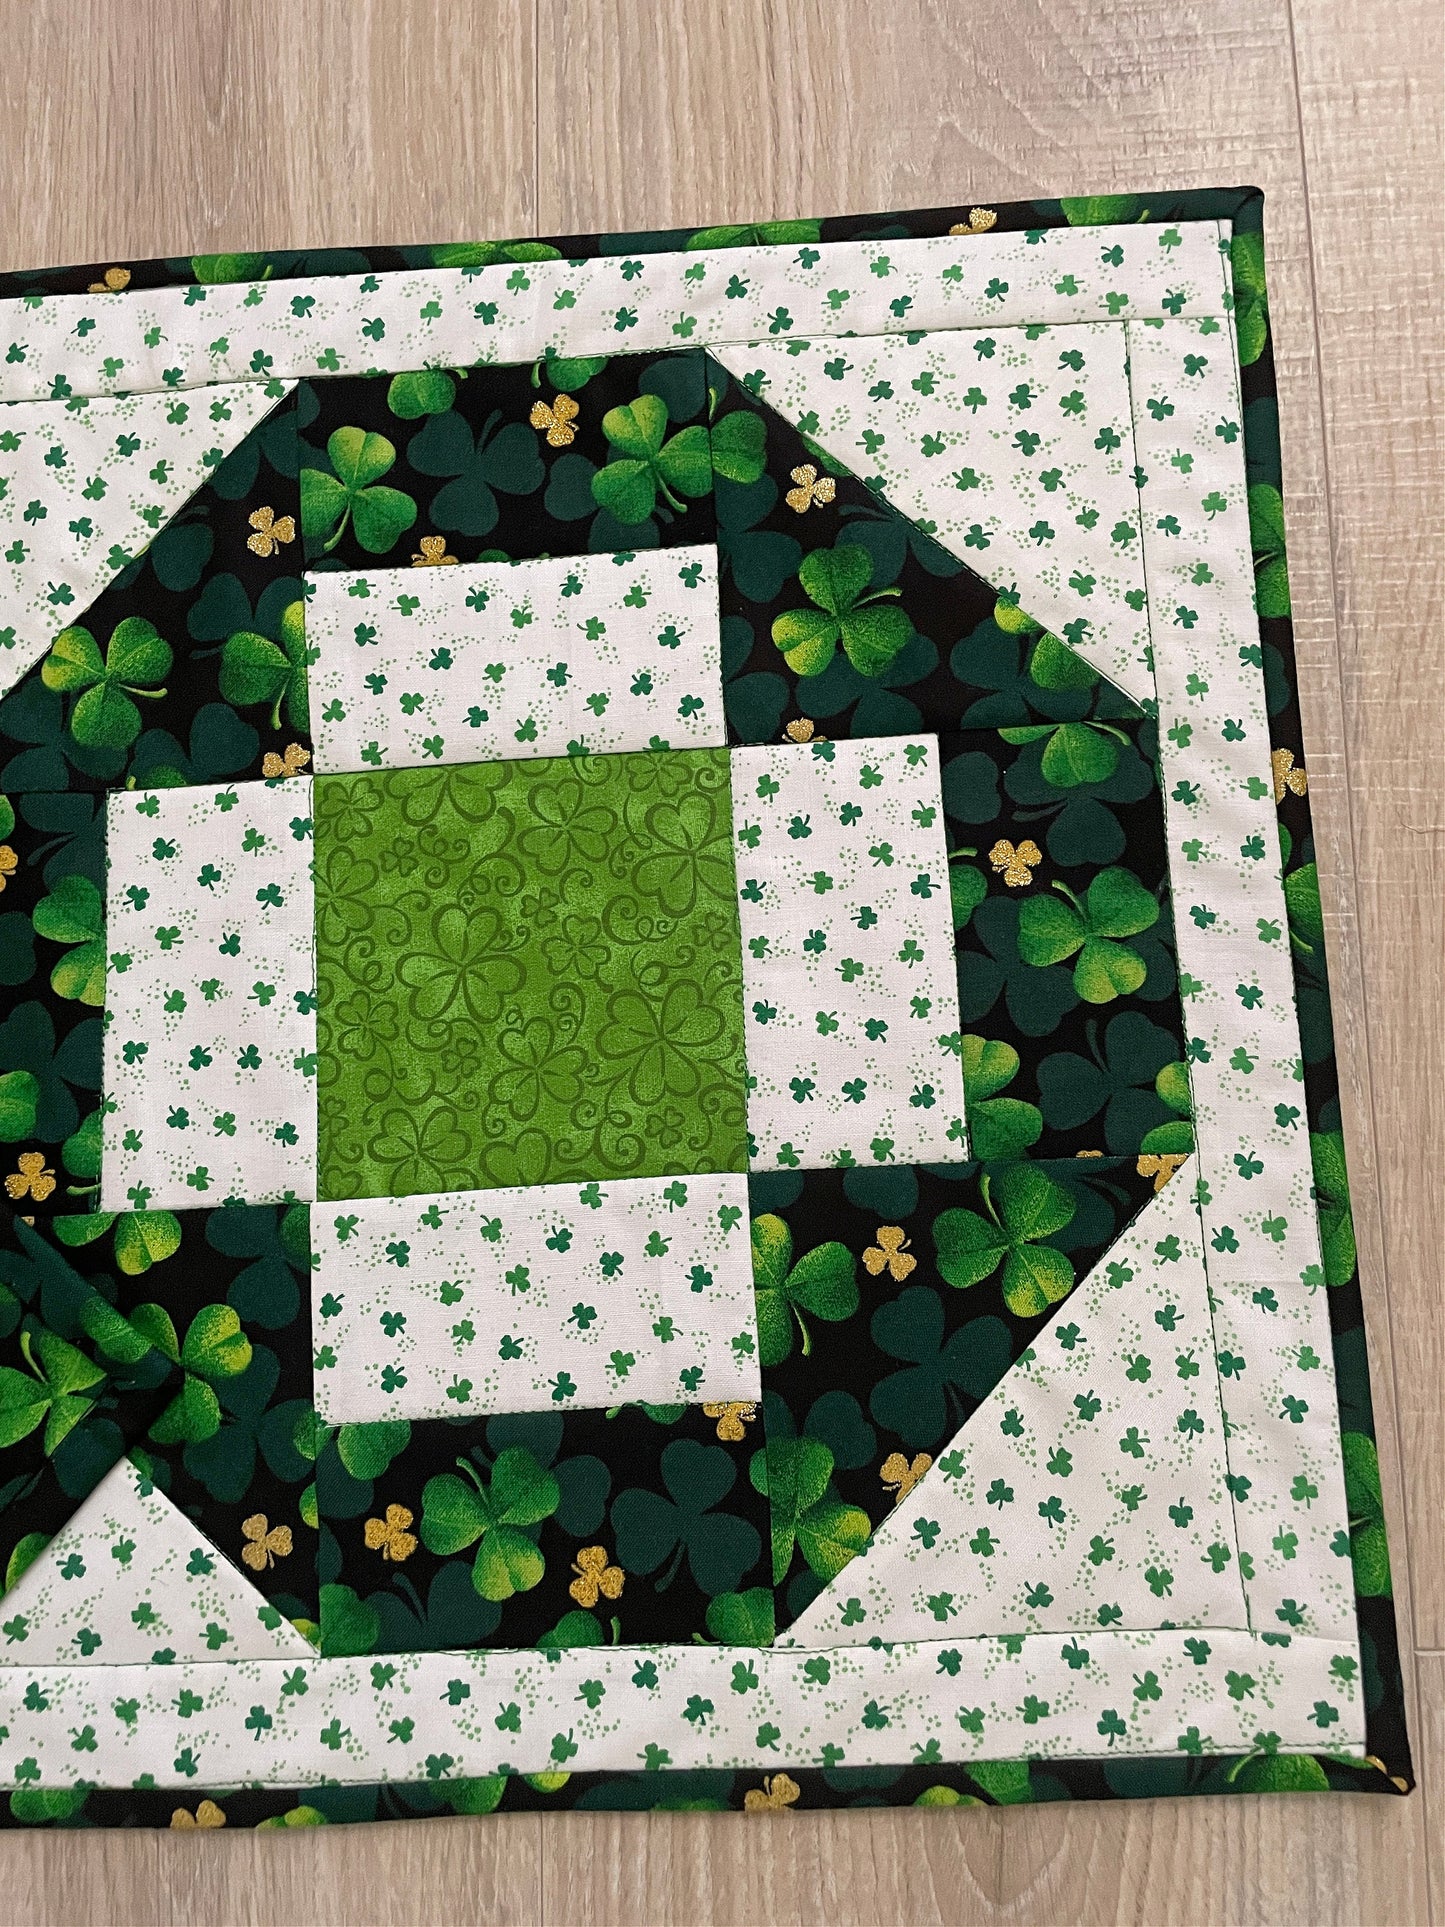 Handmade Green and White St. Patrick's Day Table Runner, Modern Cross Patchwork Design